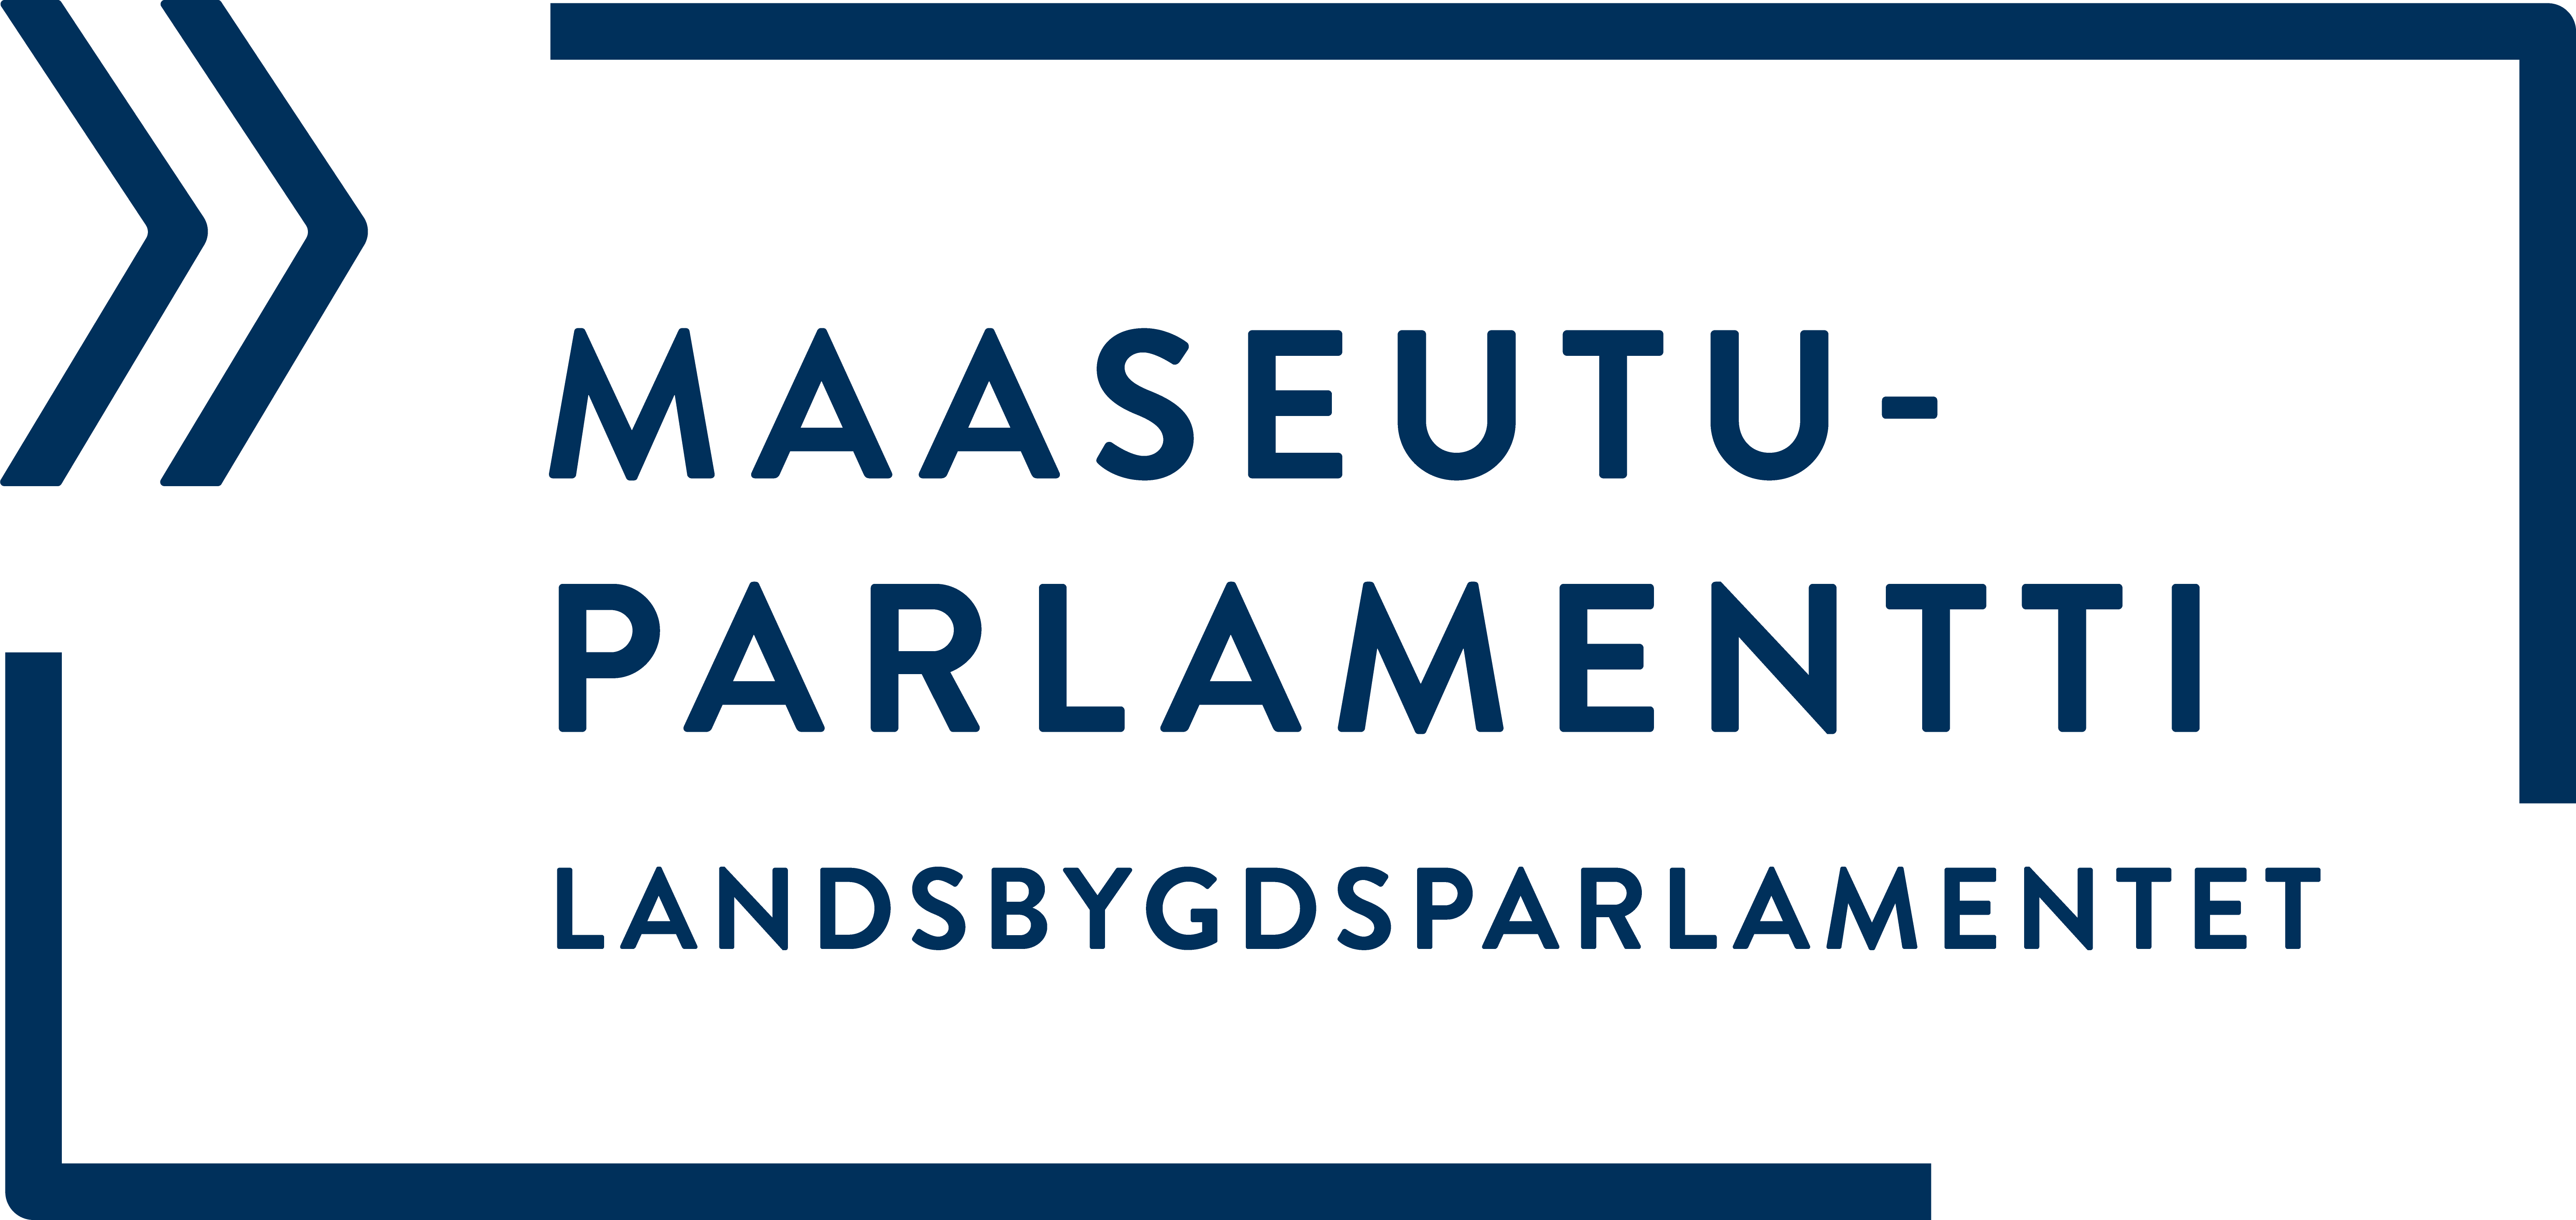 På svenska (Maaseutuparlamentti)